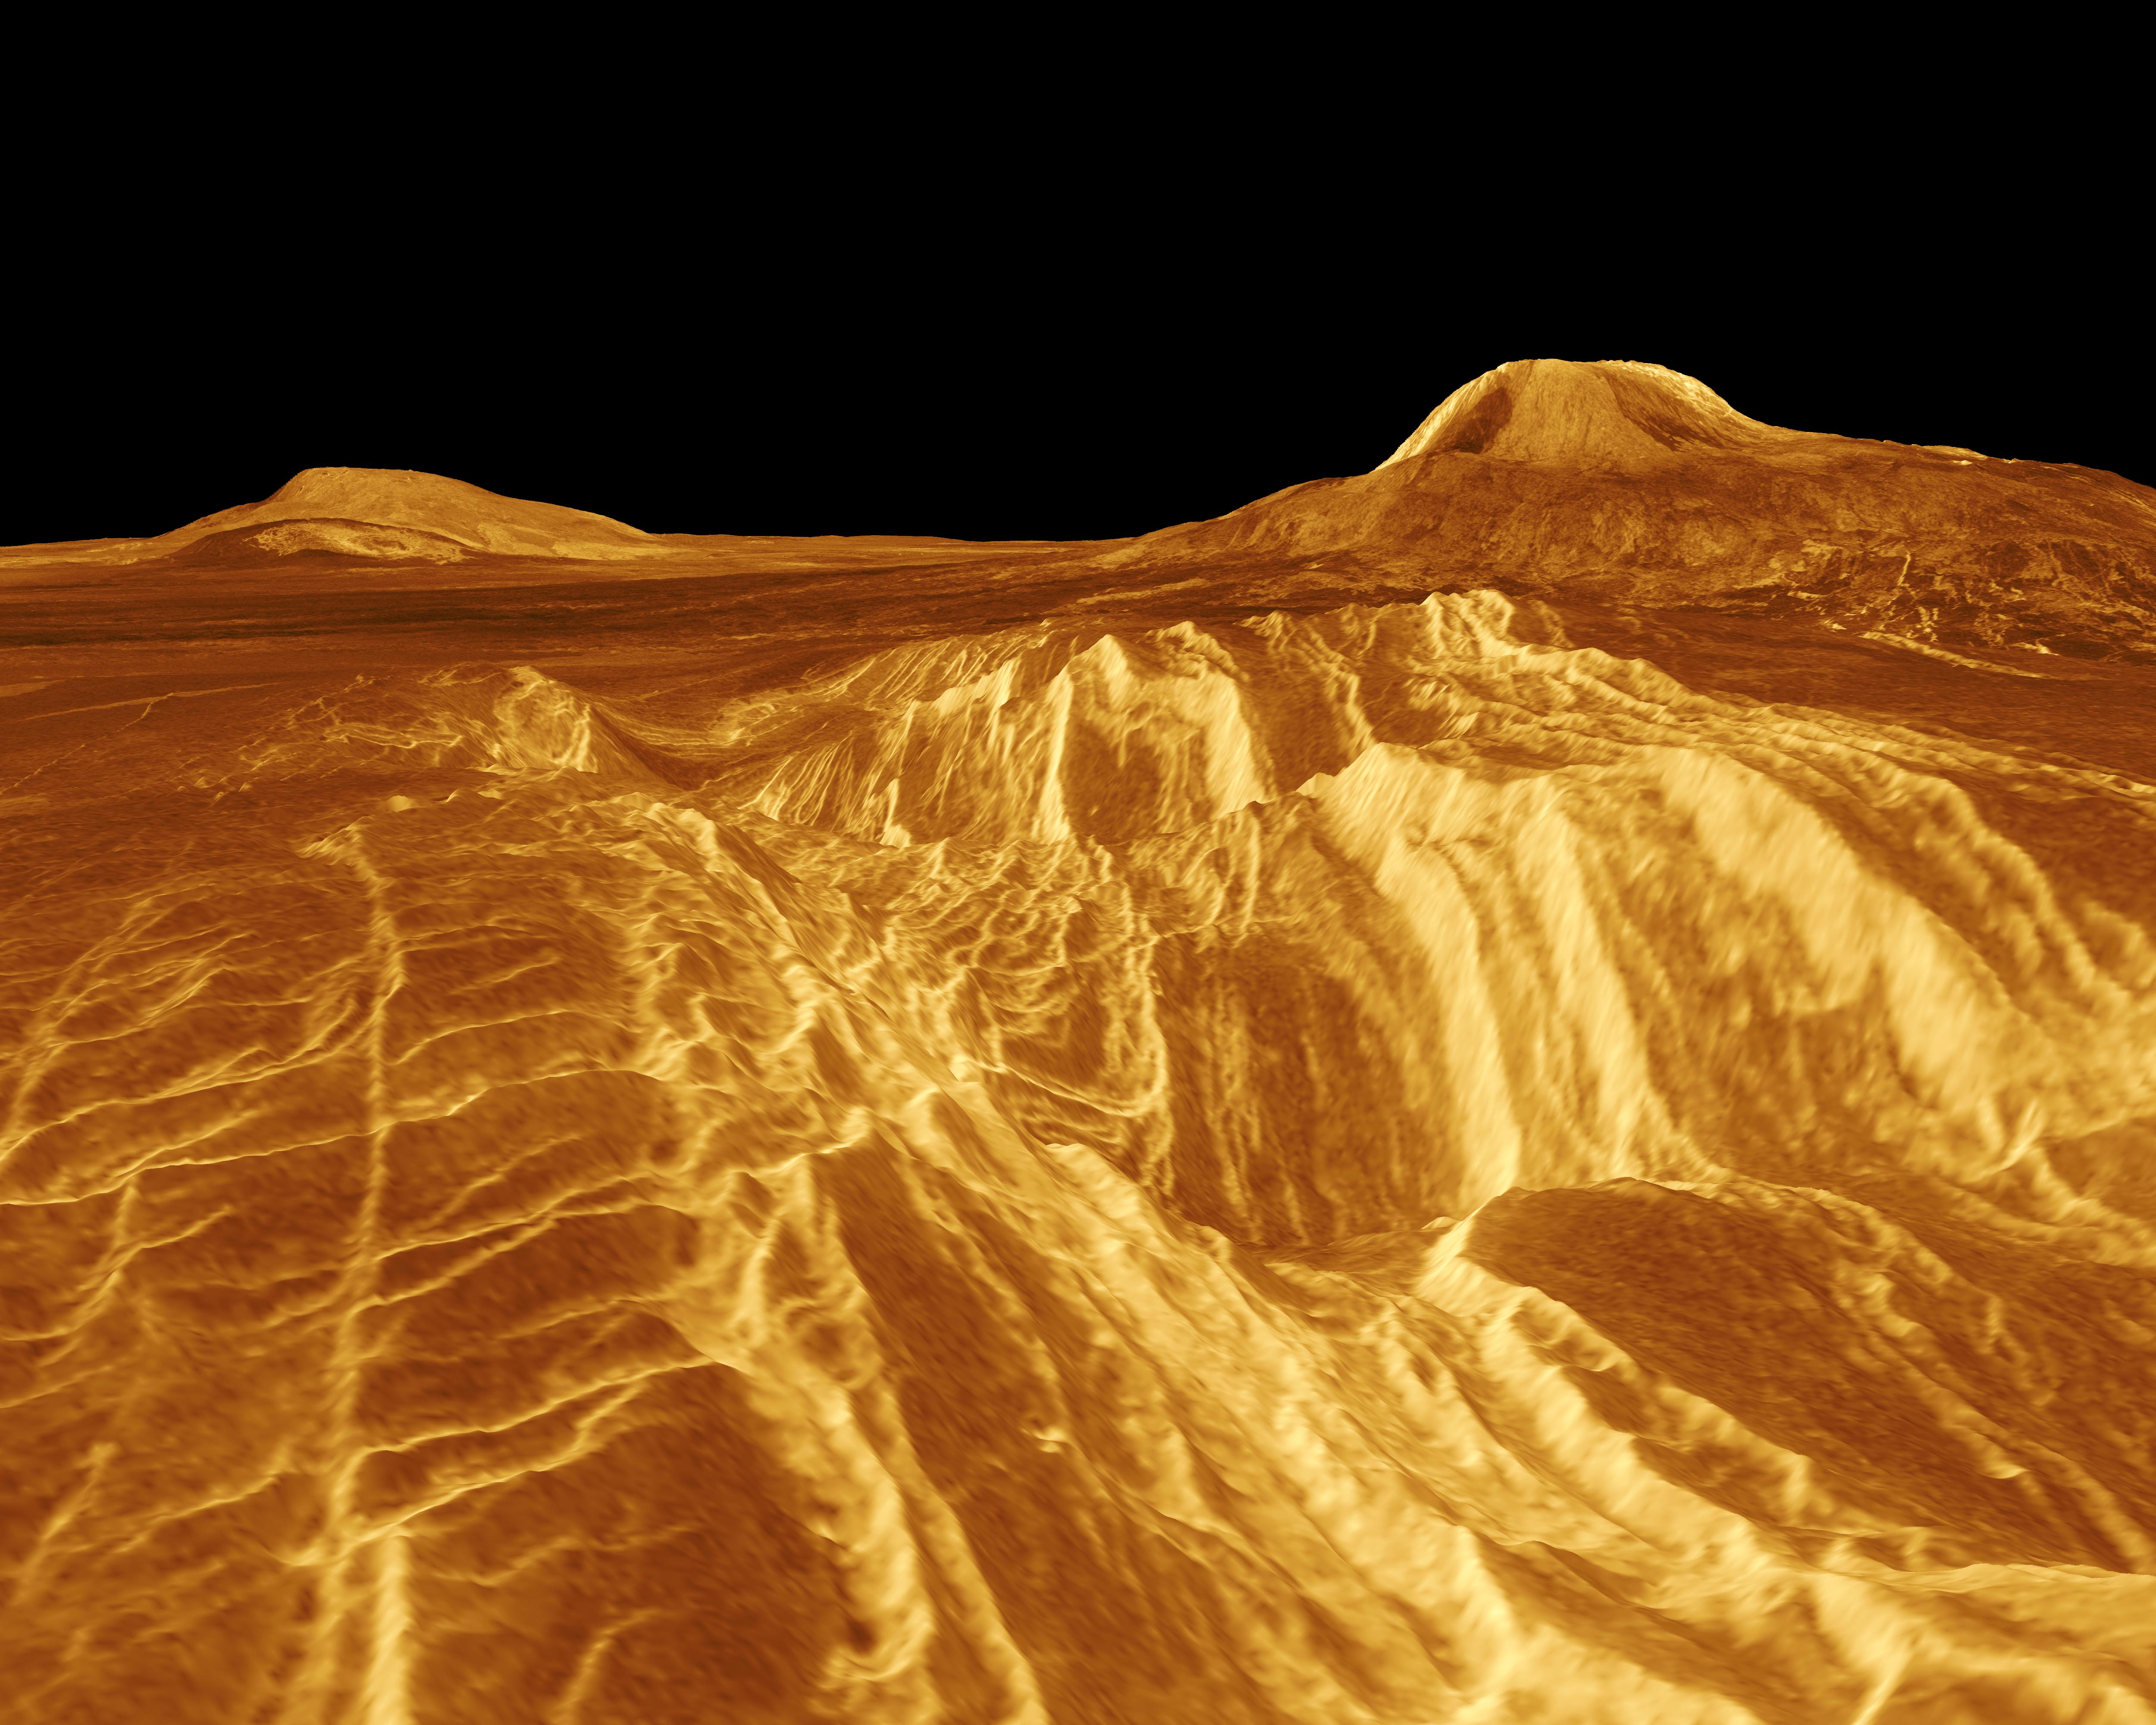 Компьютерная реконструкция плато Elista Regio на Венере – справа вулкан Gula Mons высотой 3000 м. Рисунок показывает, как тяжело придется работать на планете, где температуры выше земных в 20 раз, а давление – в 90.